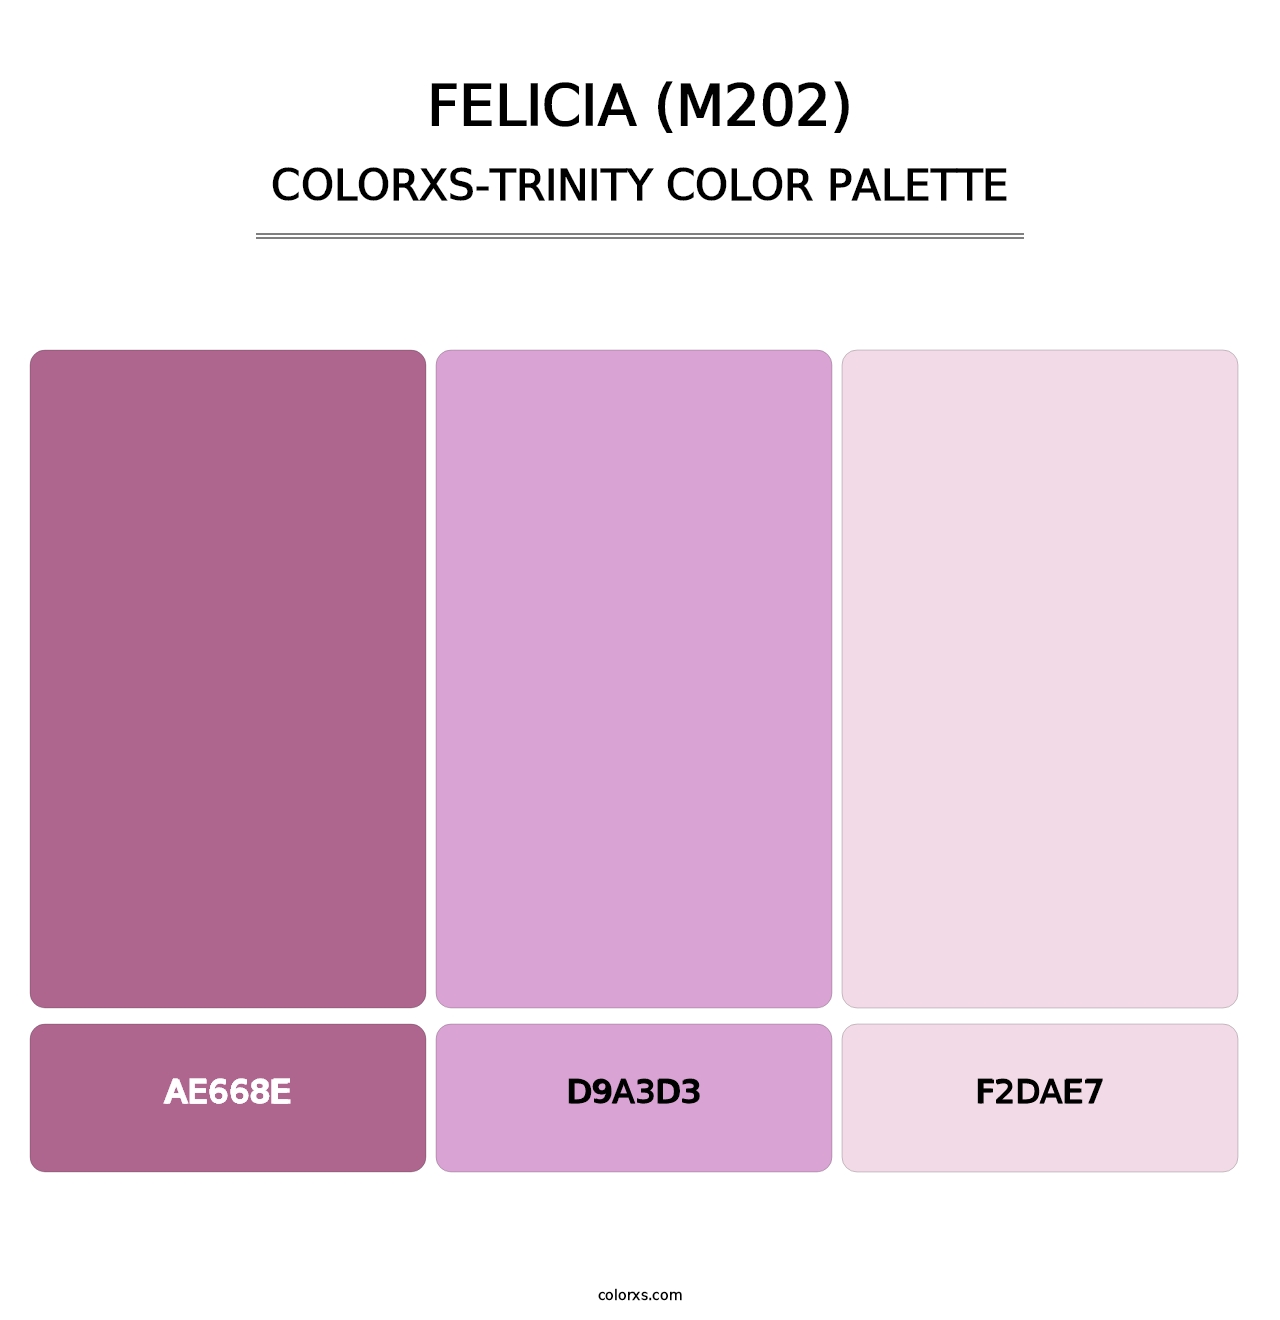 Felicia (M202) - Colorxs Trinity Palette